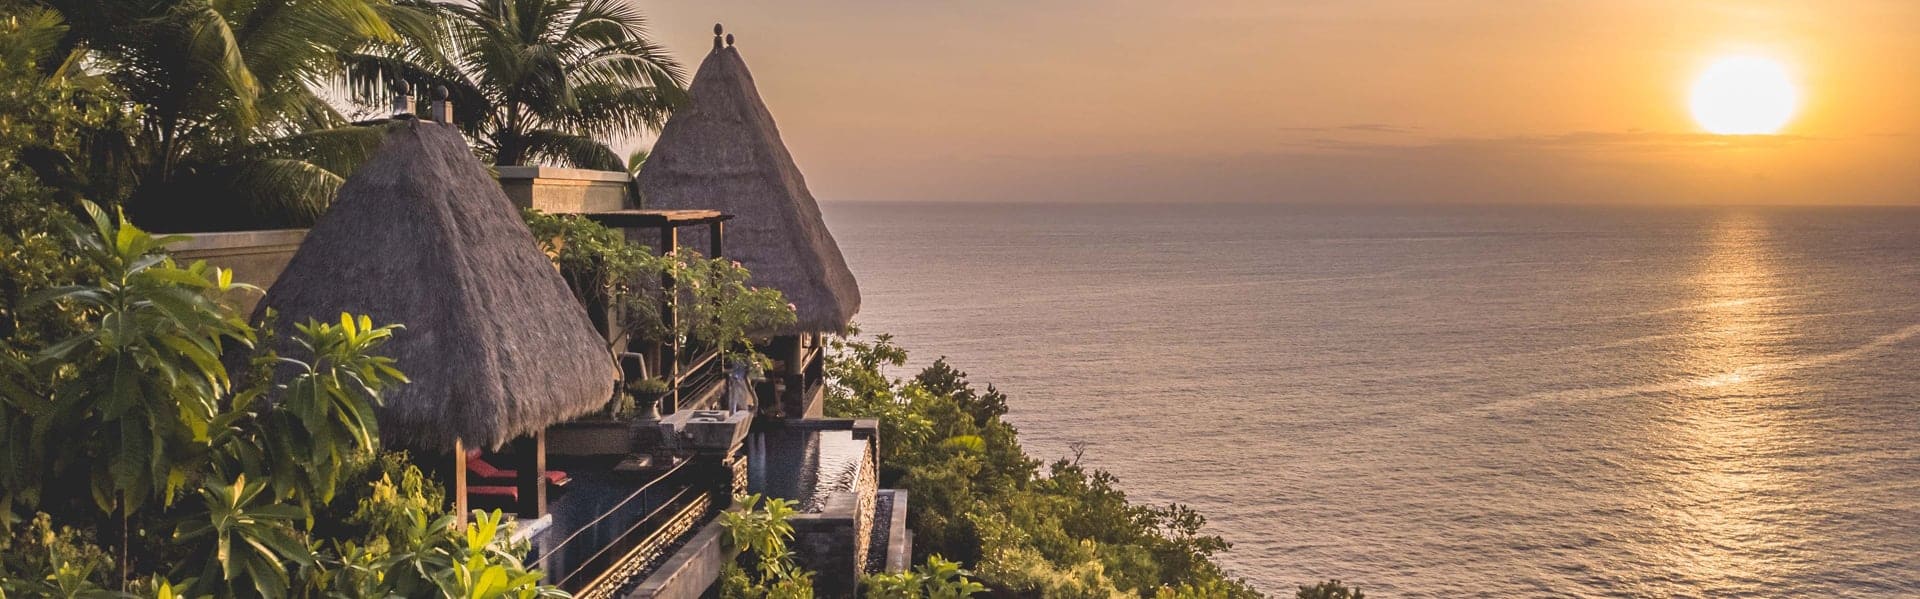 luxury resort anantara maia seychelles villas signature sunset